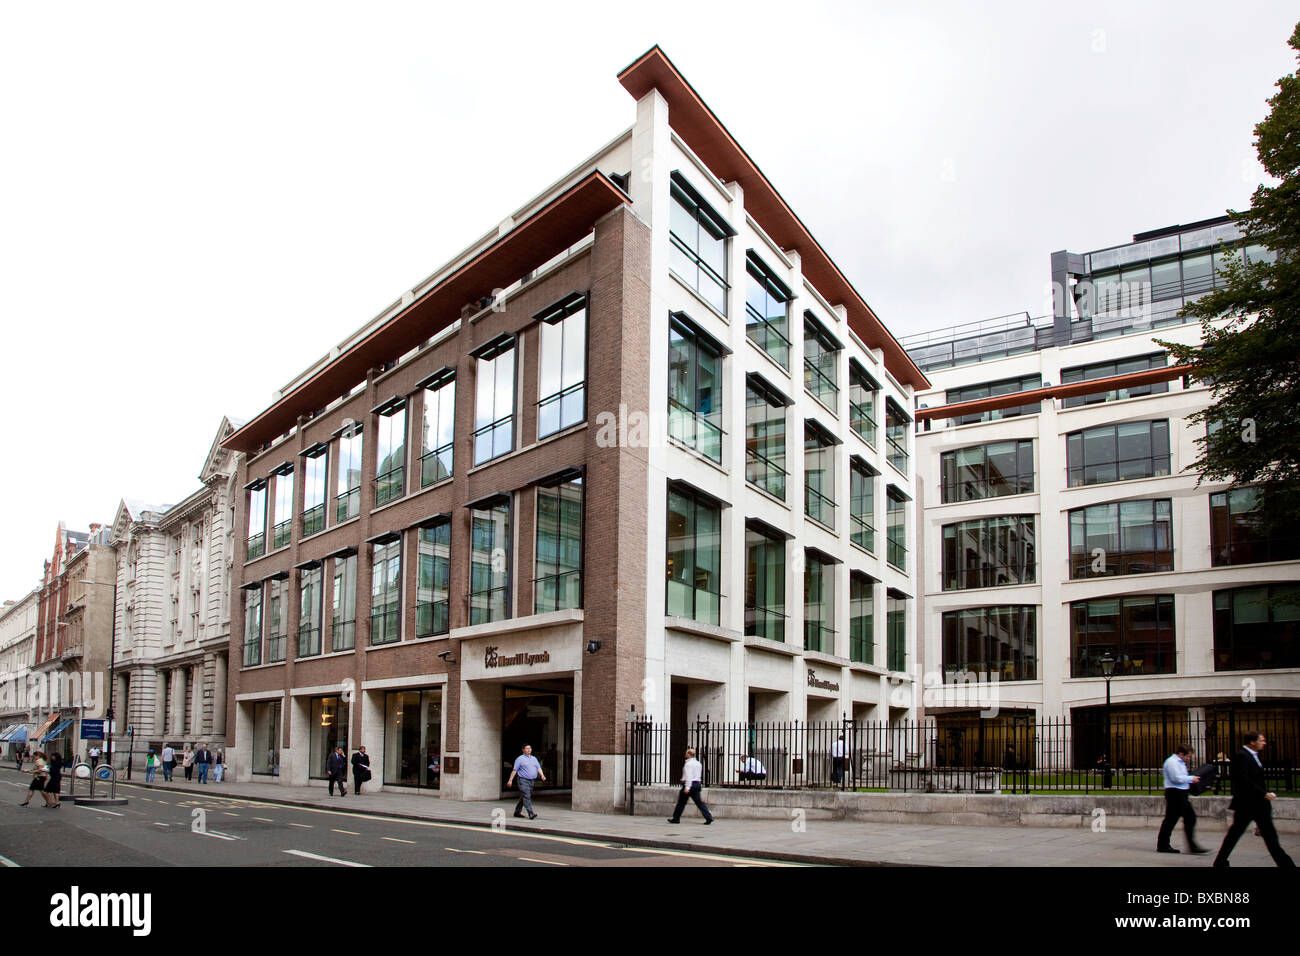 Sede del banco de inversiones y la compañía de servicios financieros Merrill Lynch en Londres, Inglaterra, Reino Unido, Europa Foto de stock